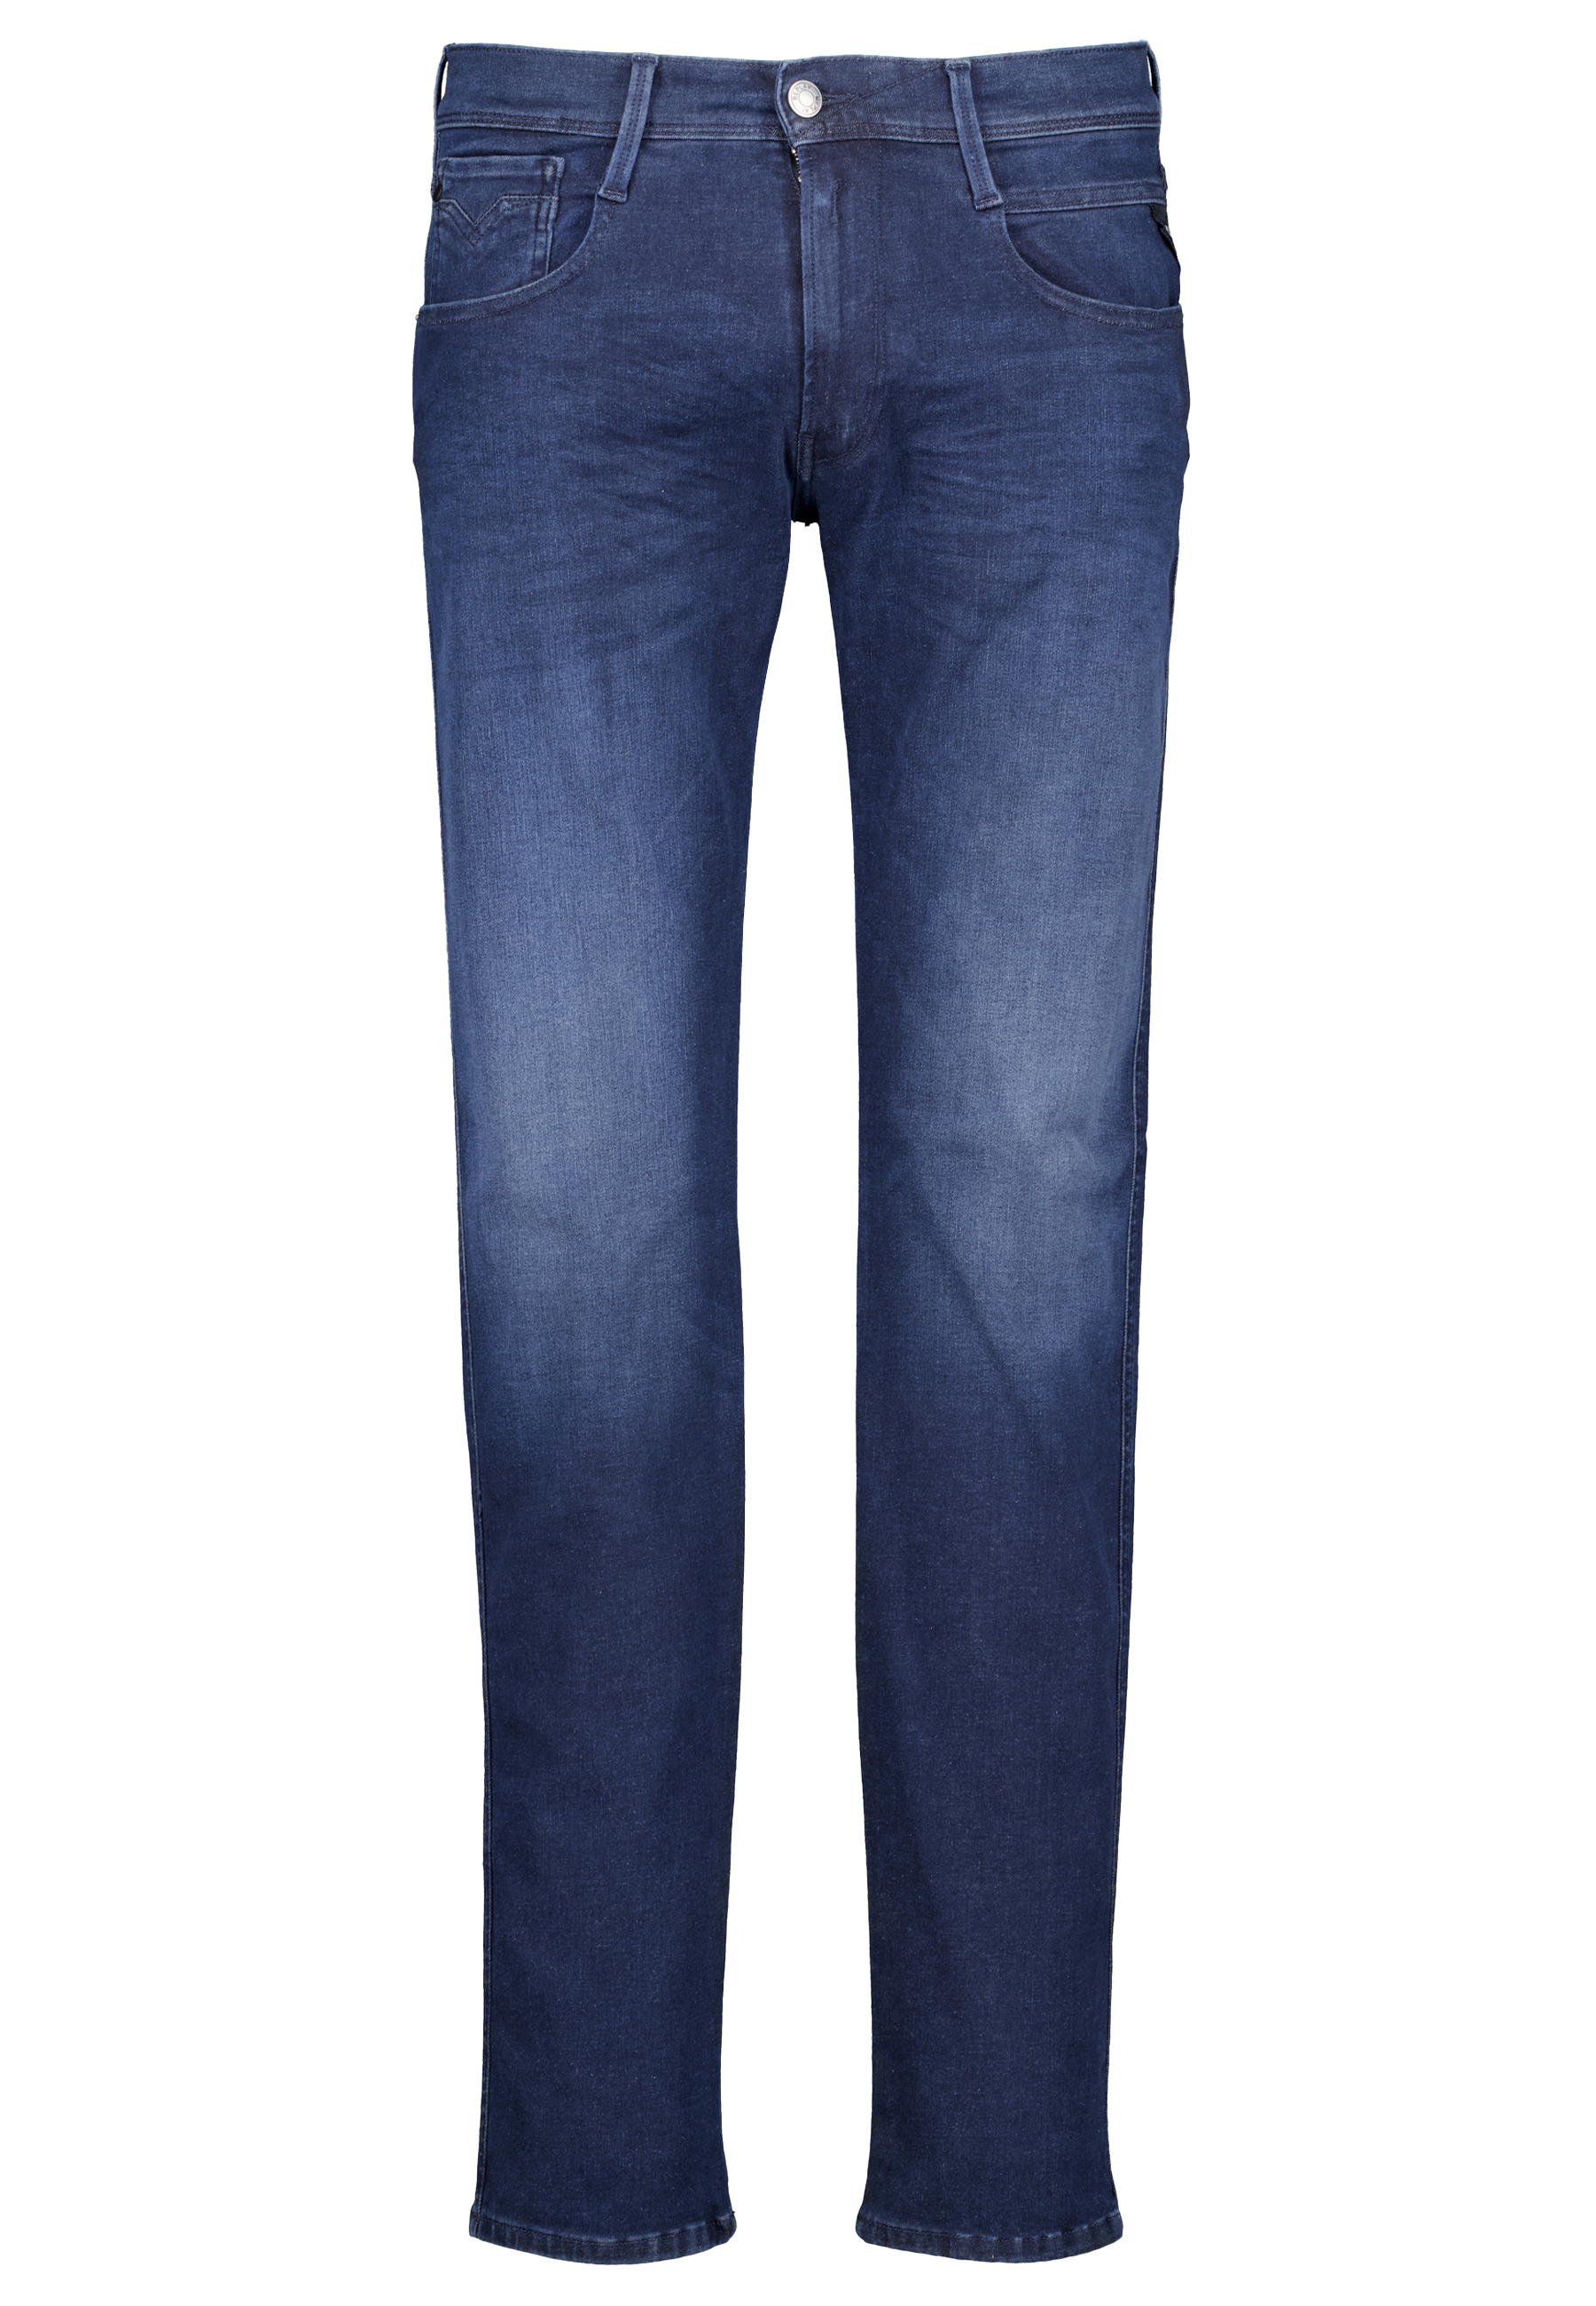 Replay jeans blauw Heren maat 36/34